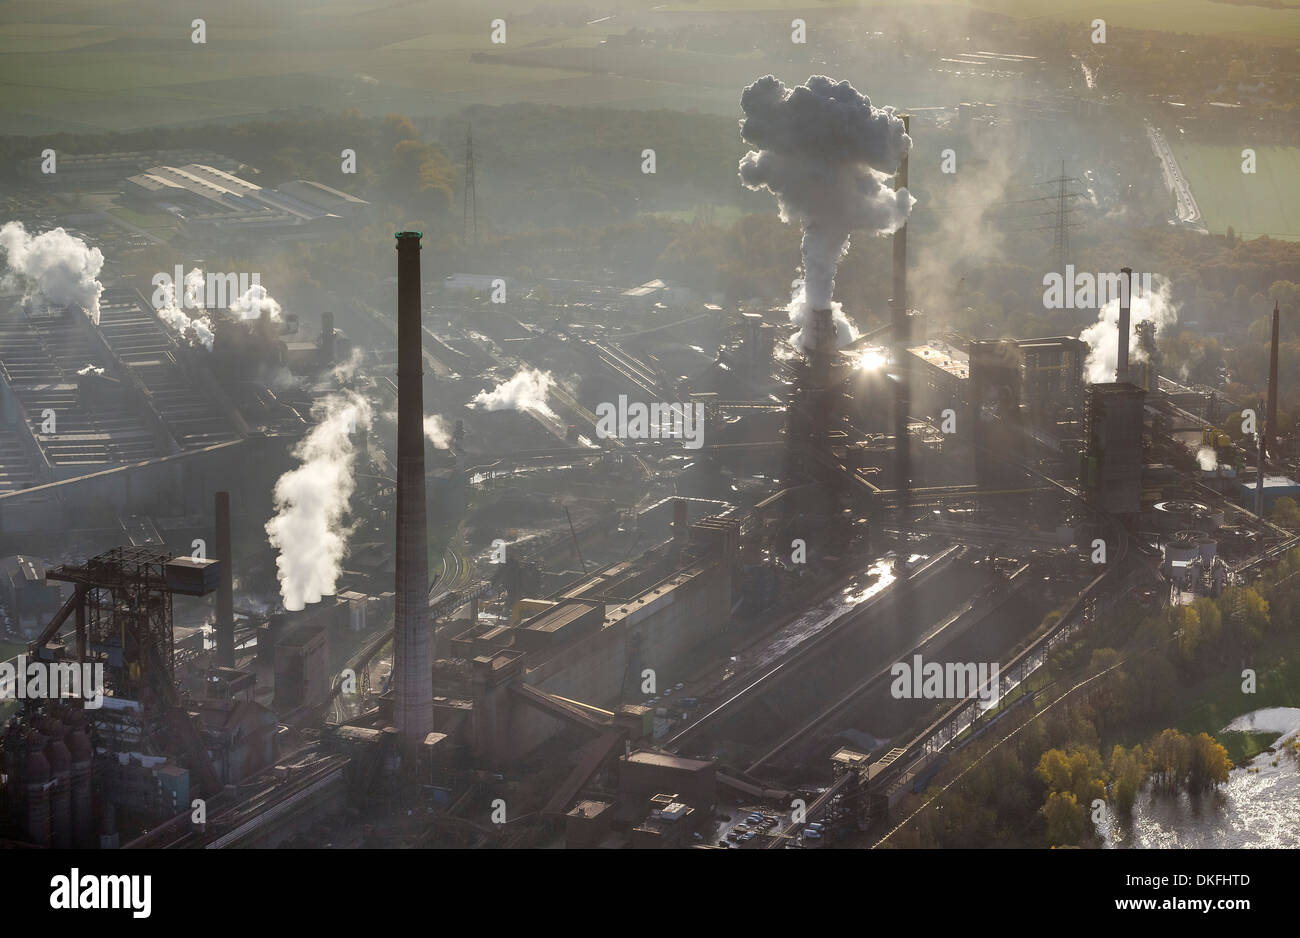 HKM, Mannesmann Blasstahlwerk 1, basic oxygen steelmaking plant, aerial view, Rheinhausen, Duisburg, Ruhr area Stock Photo